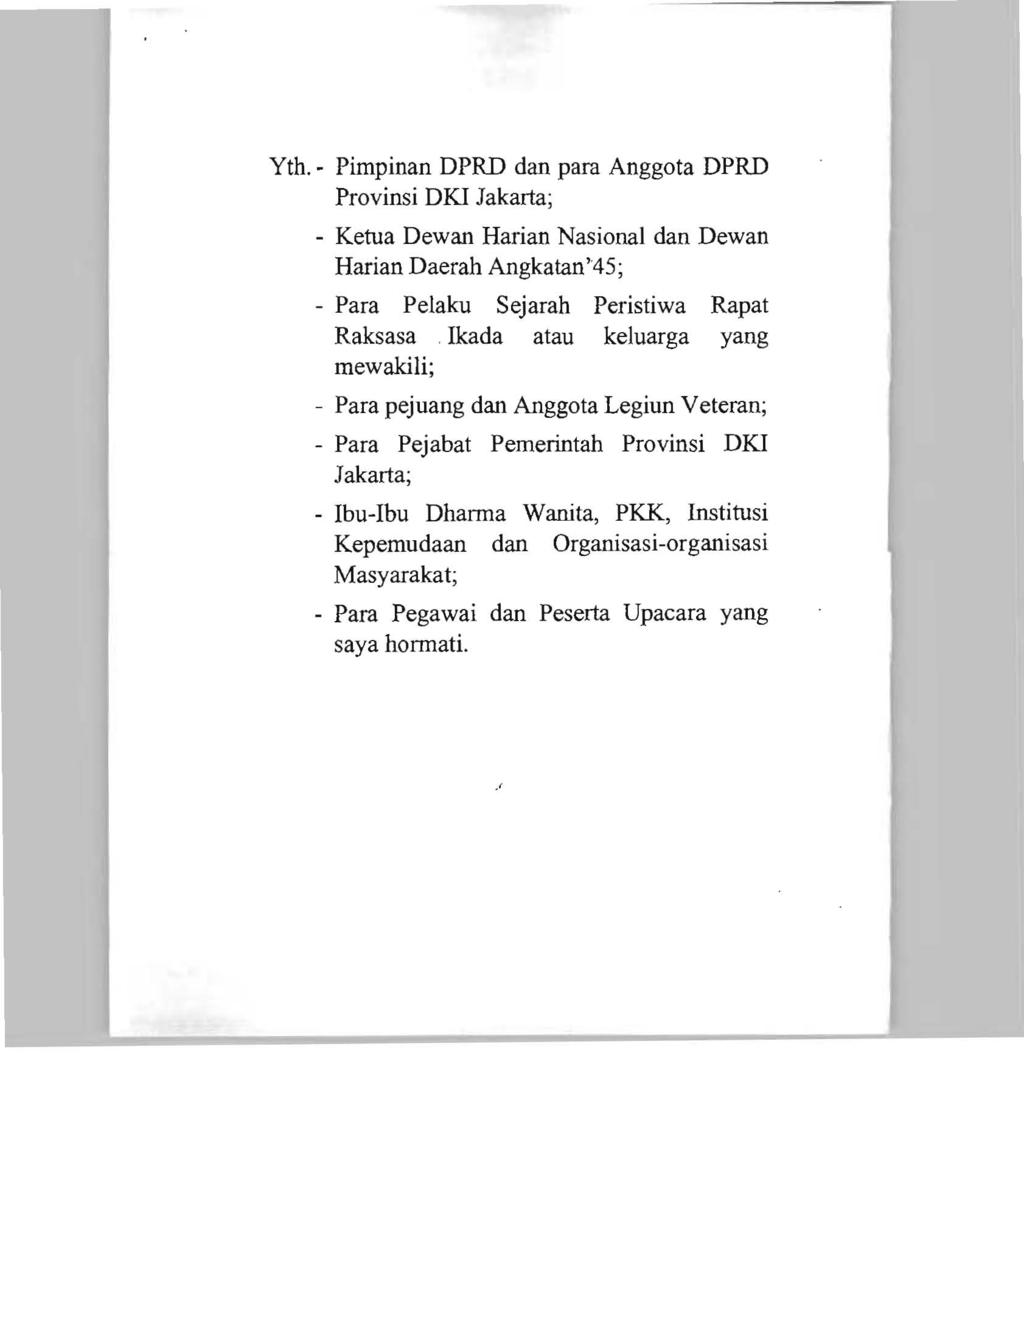 Yth. - Pimpinan DPRD dan para Anggota DPRD Provinsi DKI Jakarta; - Ketua Dewan Harian Nasional dan Dewan Harian Daerah Angkatan'45; - Para Pelaku Sejarah Peristiwa Rapat Raksasa.